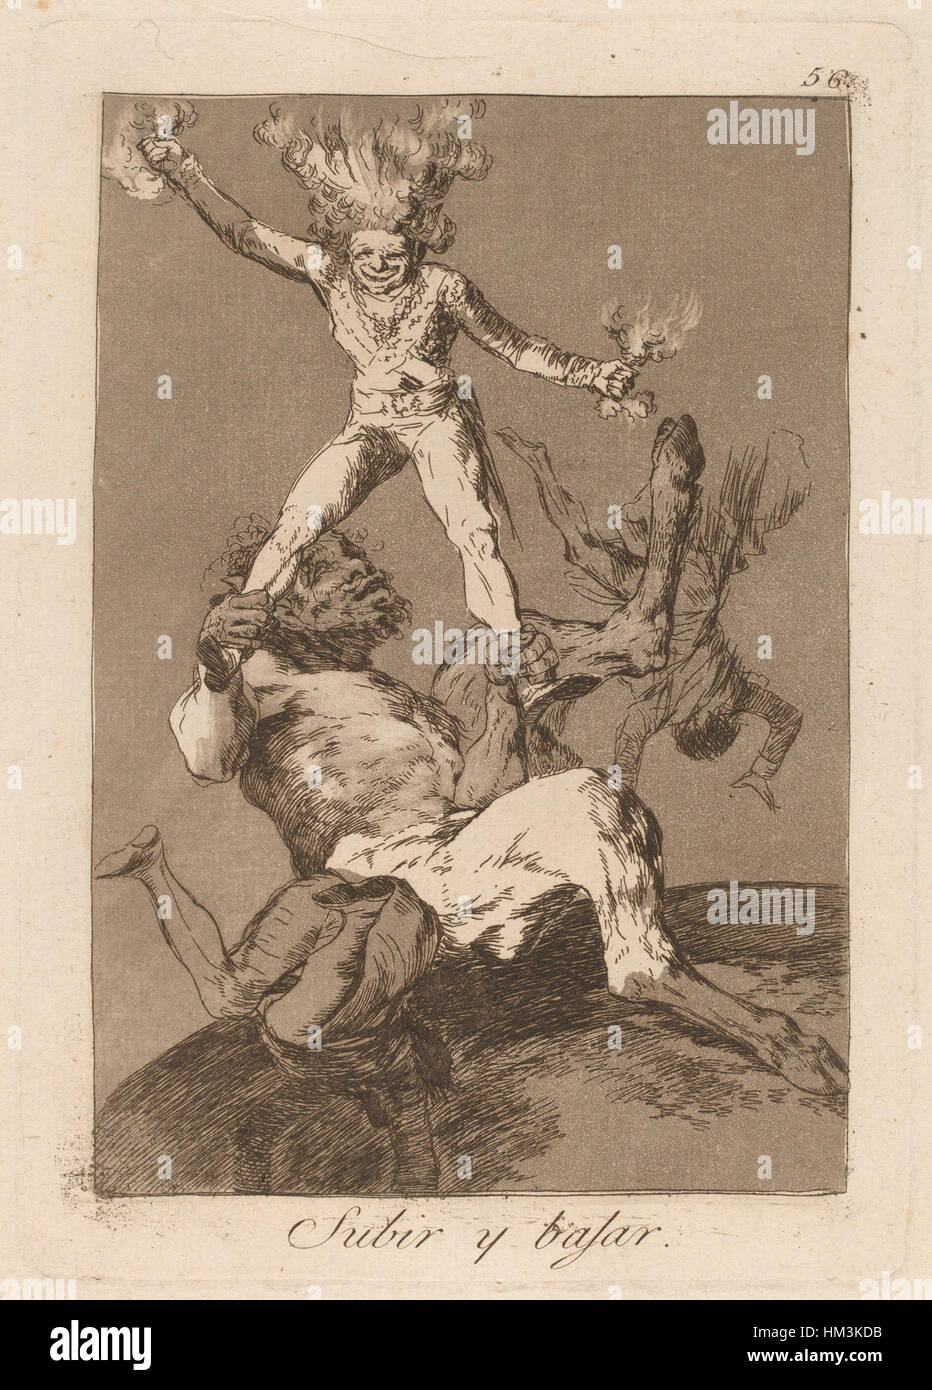 Goya - Los caprichos - Subir y bajar Stock Photo